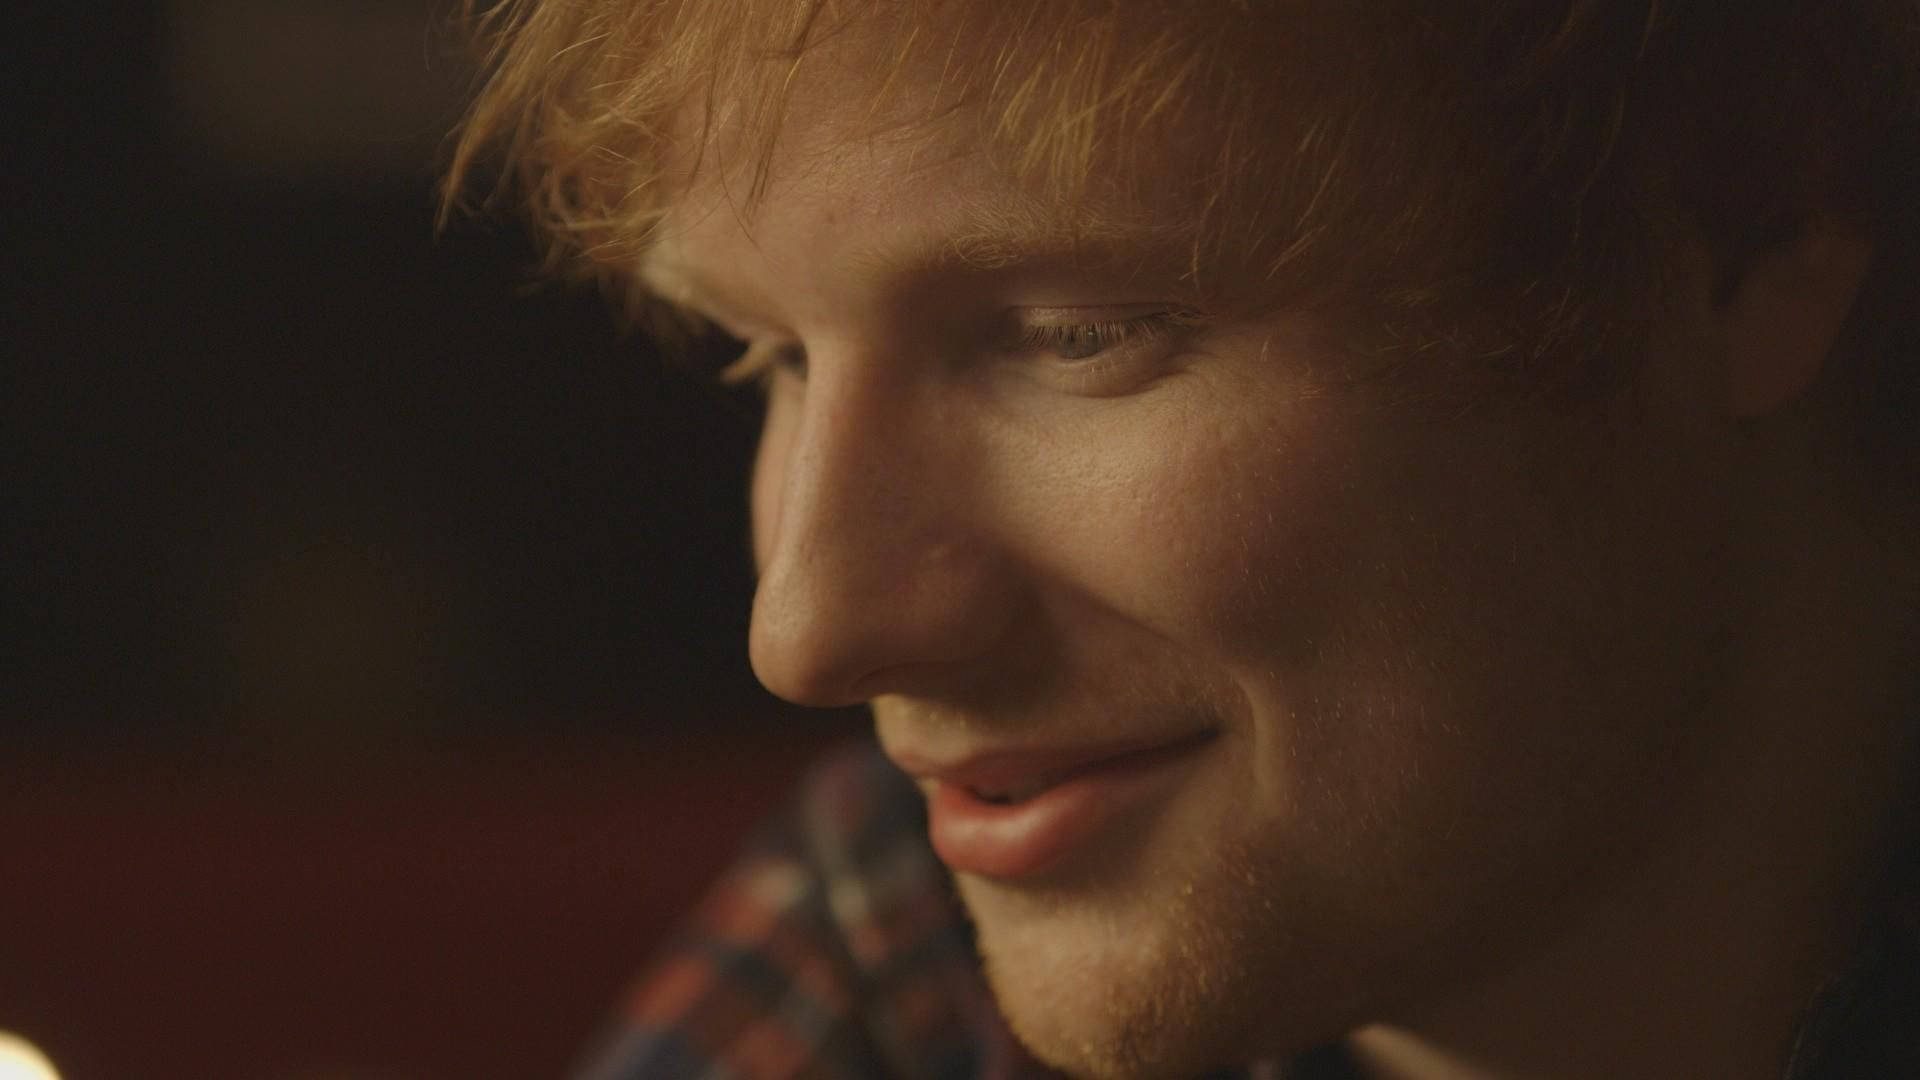 Adorable Ed Sheeran